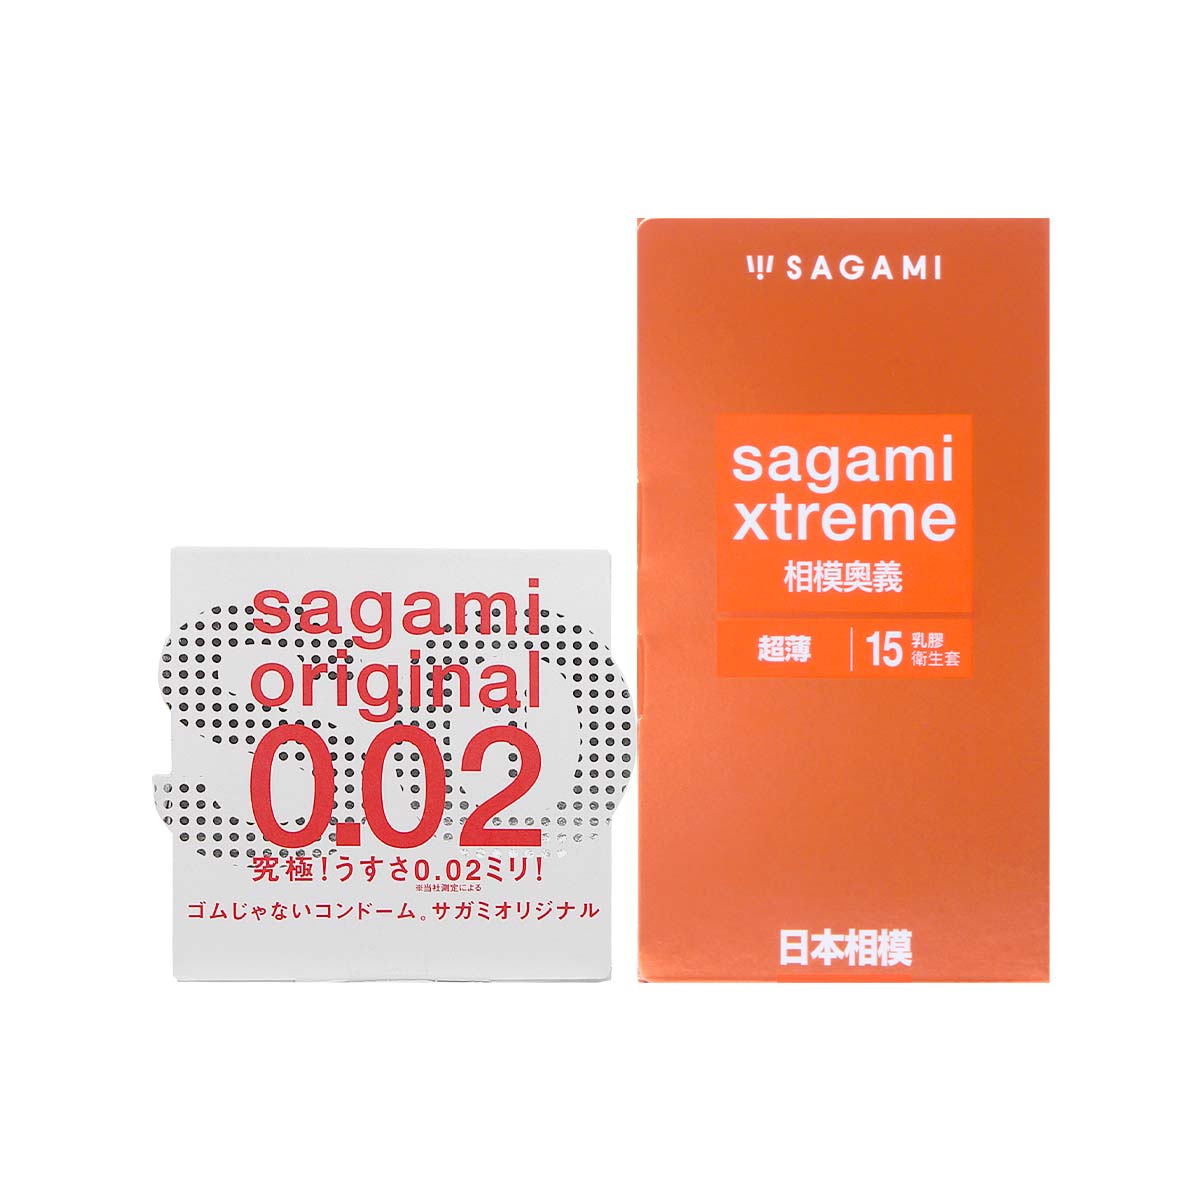 Sagami Xtreme Superthin 15's Pack Latex Condom + Sagami Original 0.02 1's Pack PU Condom-p_2